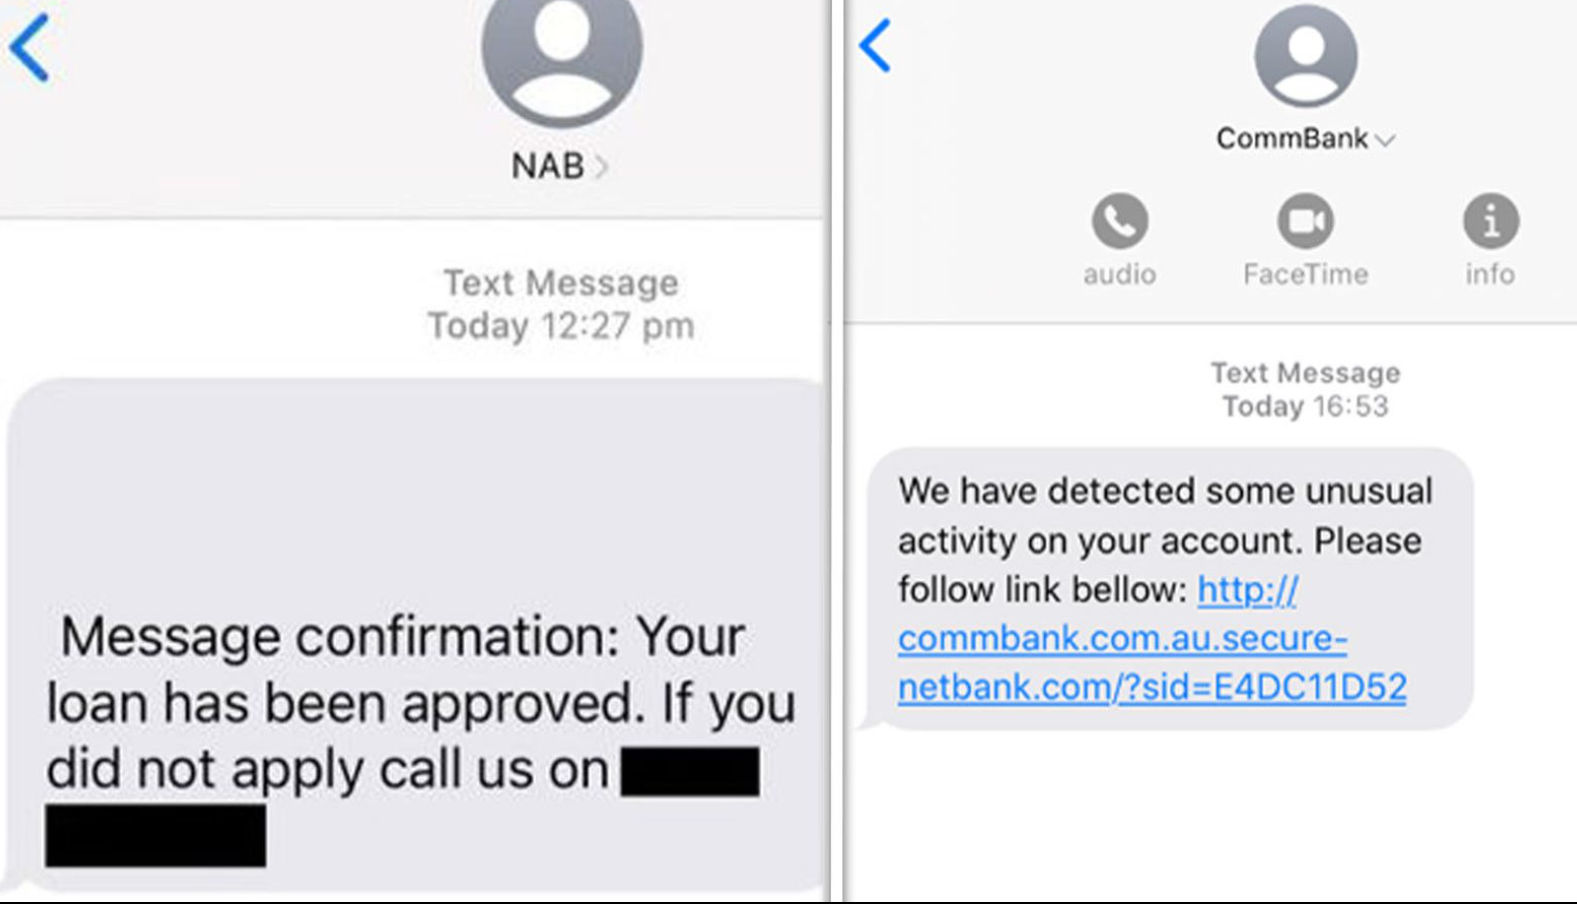 البنك الاحتياطي الاسترالي لا روابط ضمنية في الرسائل النصية بعد الآن!